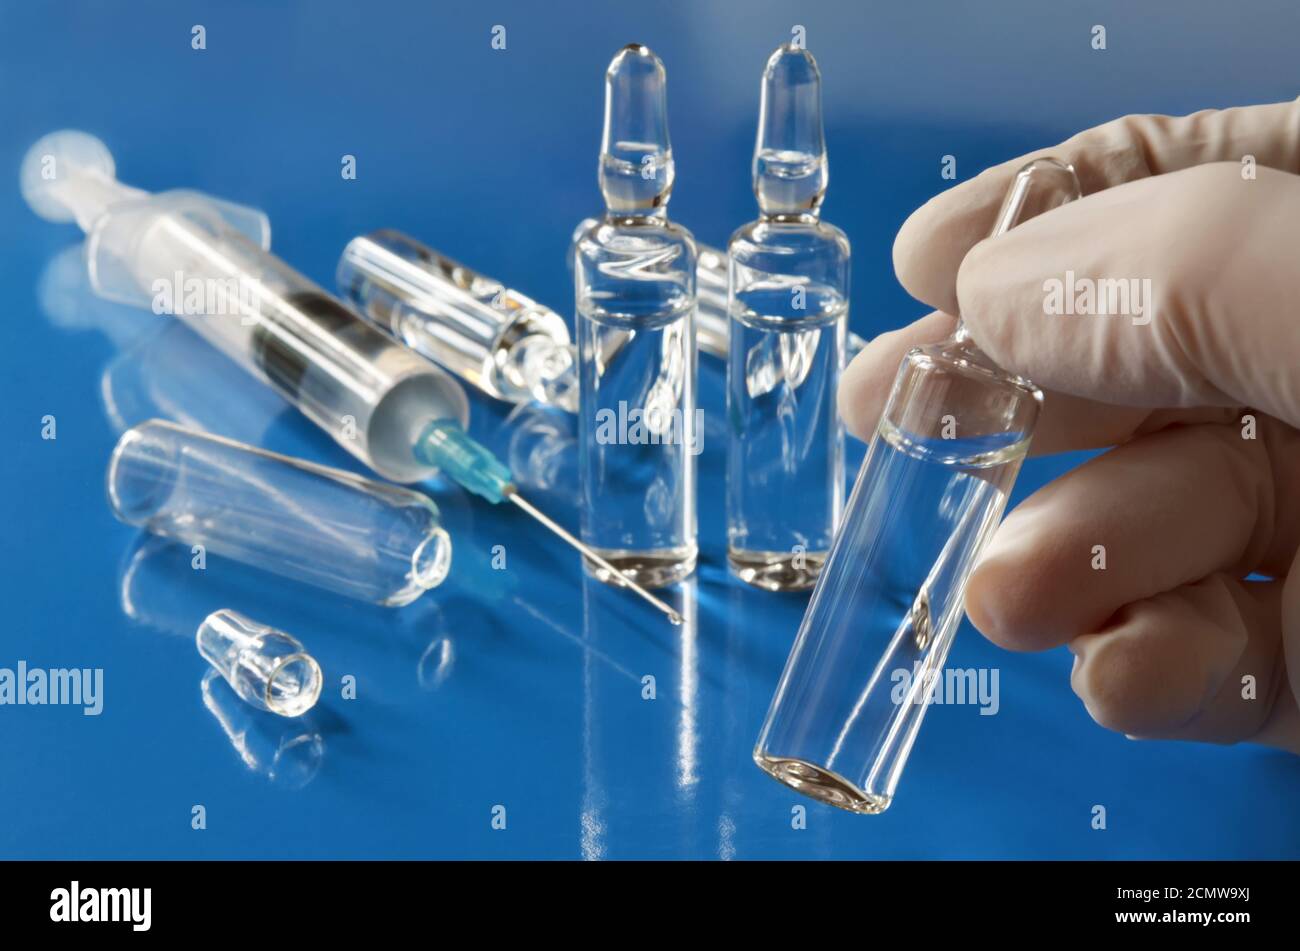 Ampolla con una vacuna en la mano de un médico trabajador en guantes de goma en un fondo azul desenfocado con una jeringa médica y otras ampollas Foto de stock